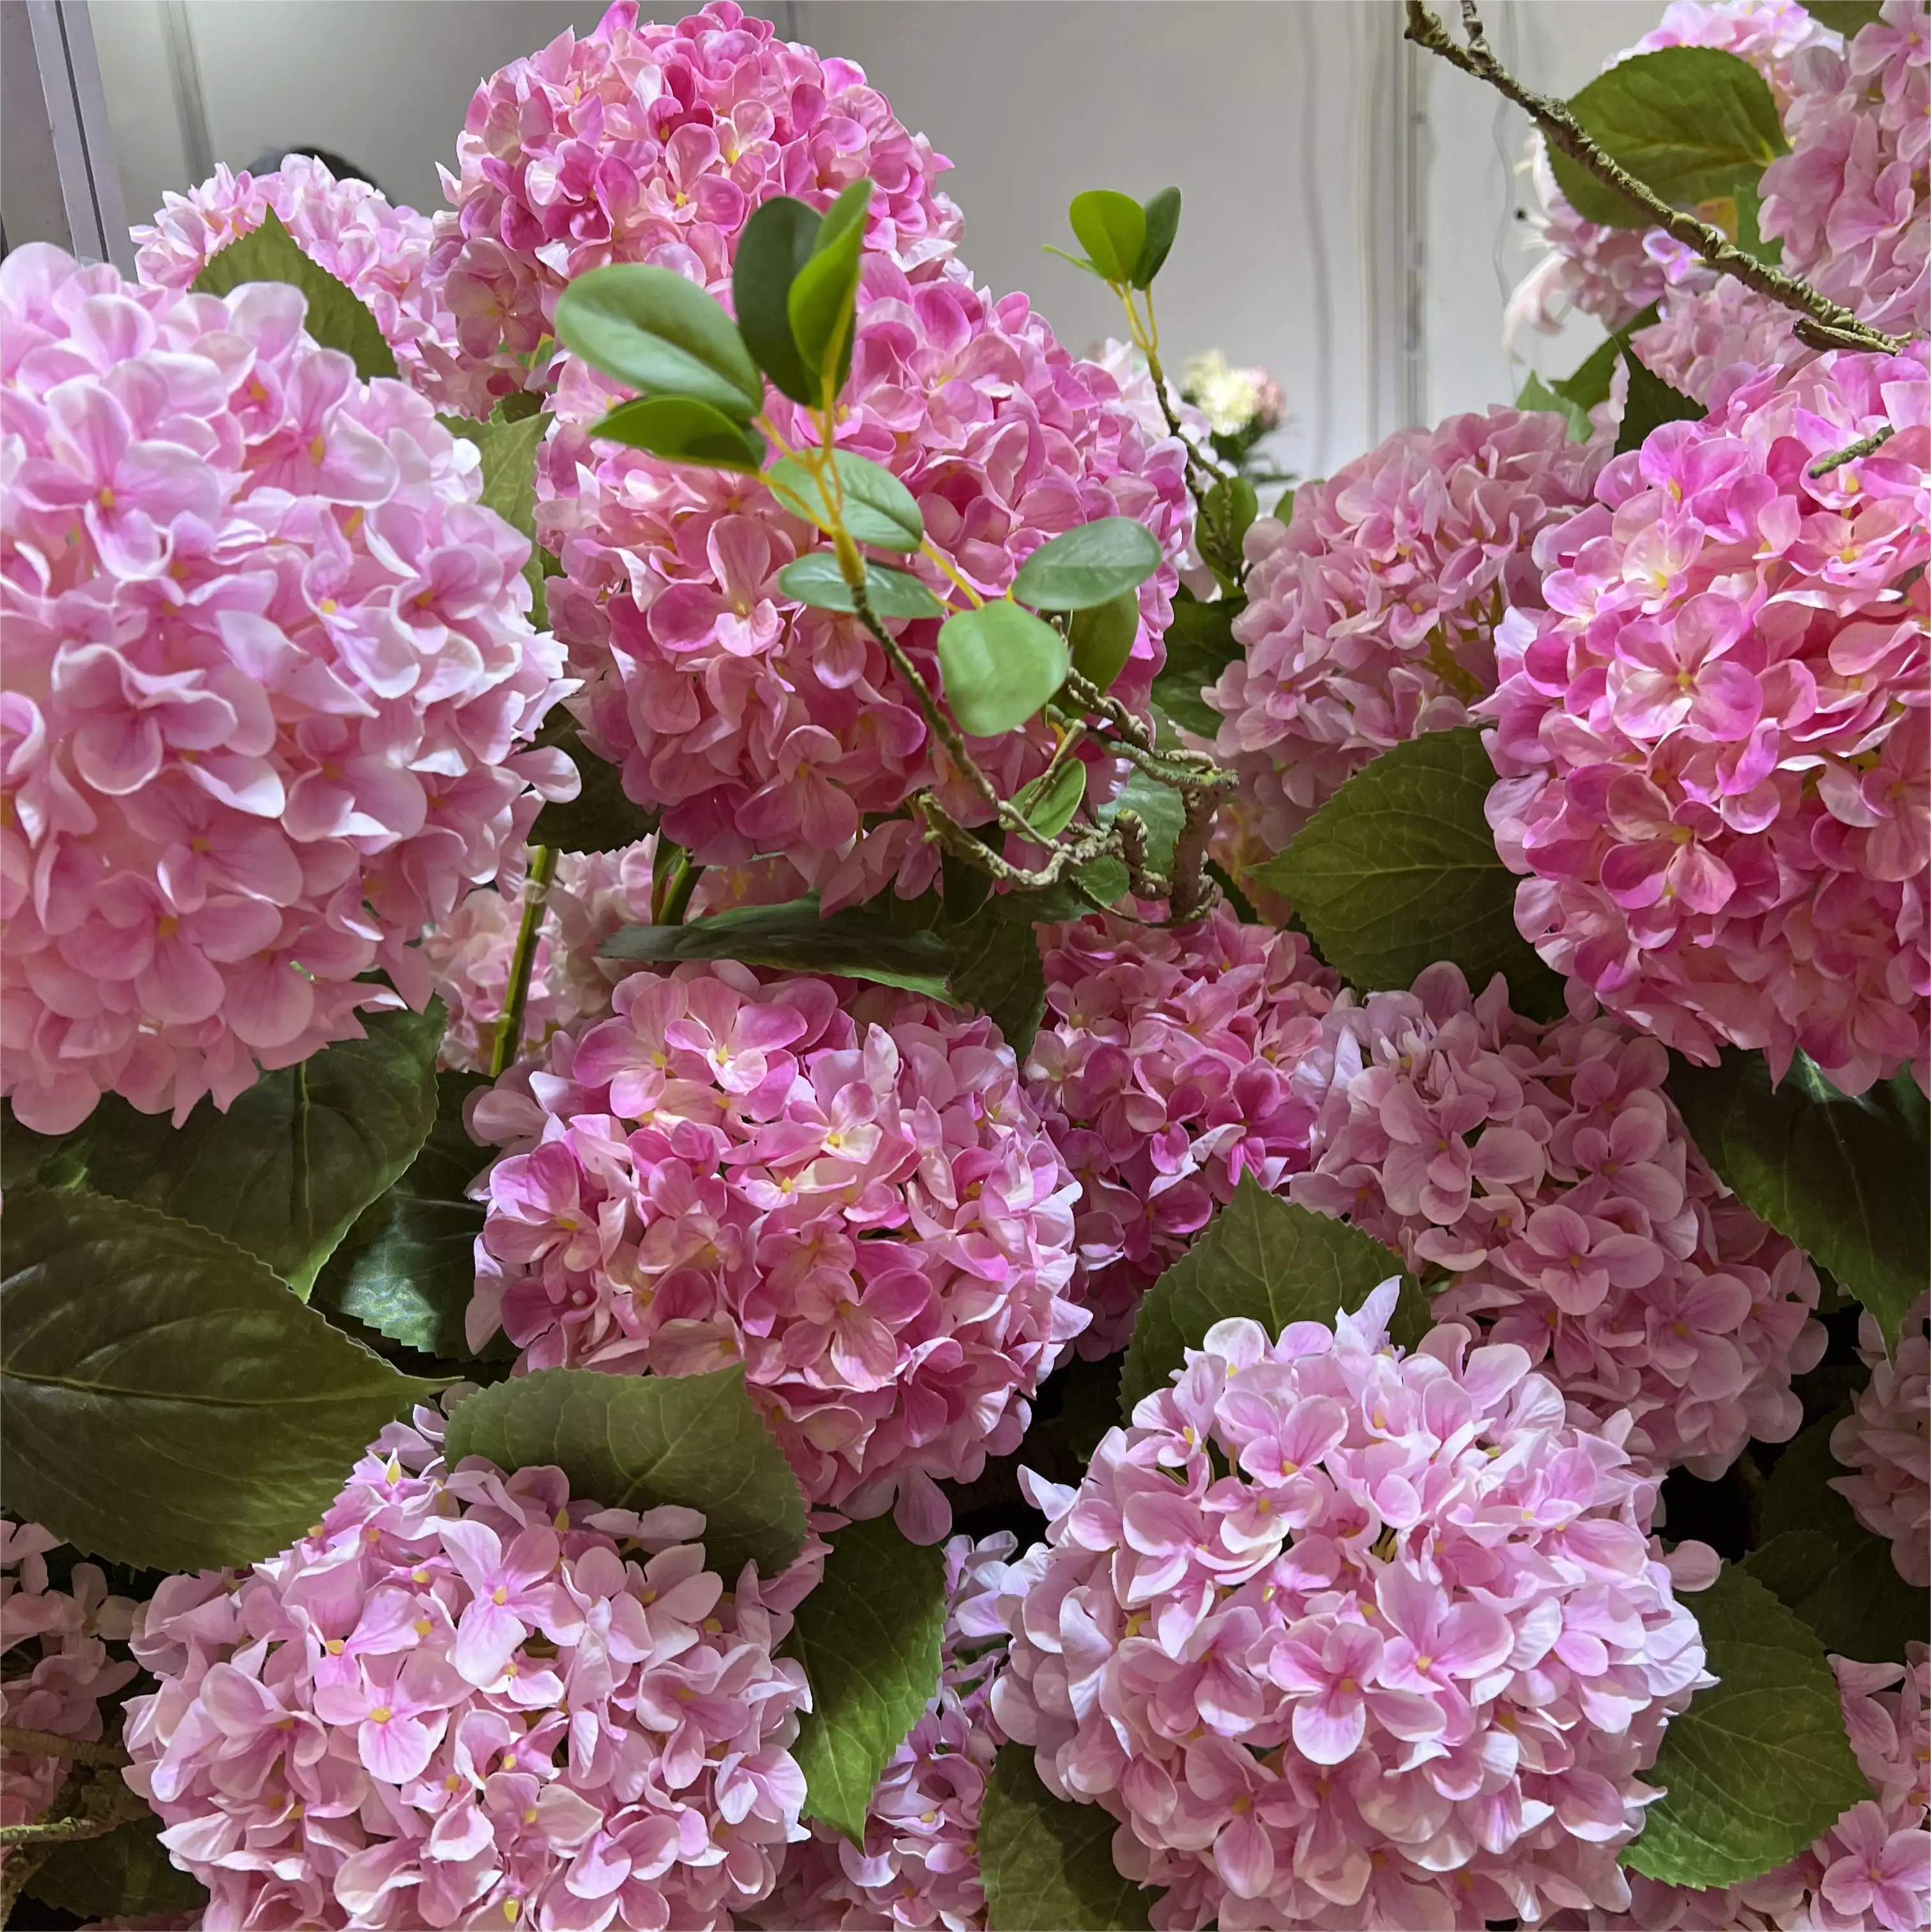 Wholesale Artificial Flower Hydrangea Branch For Home Wedding Decoration Flower Fleurs Artificielles